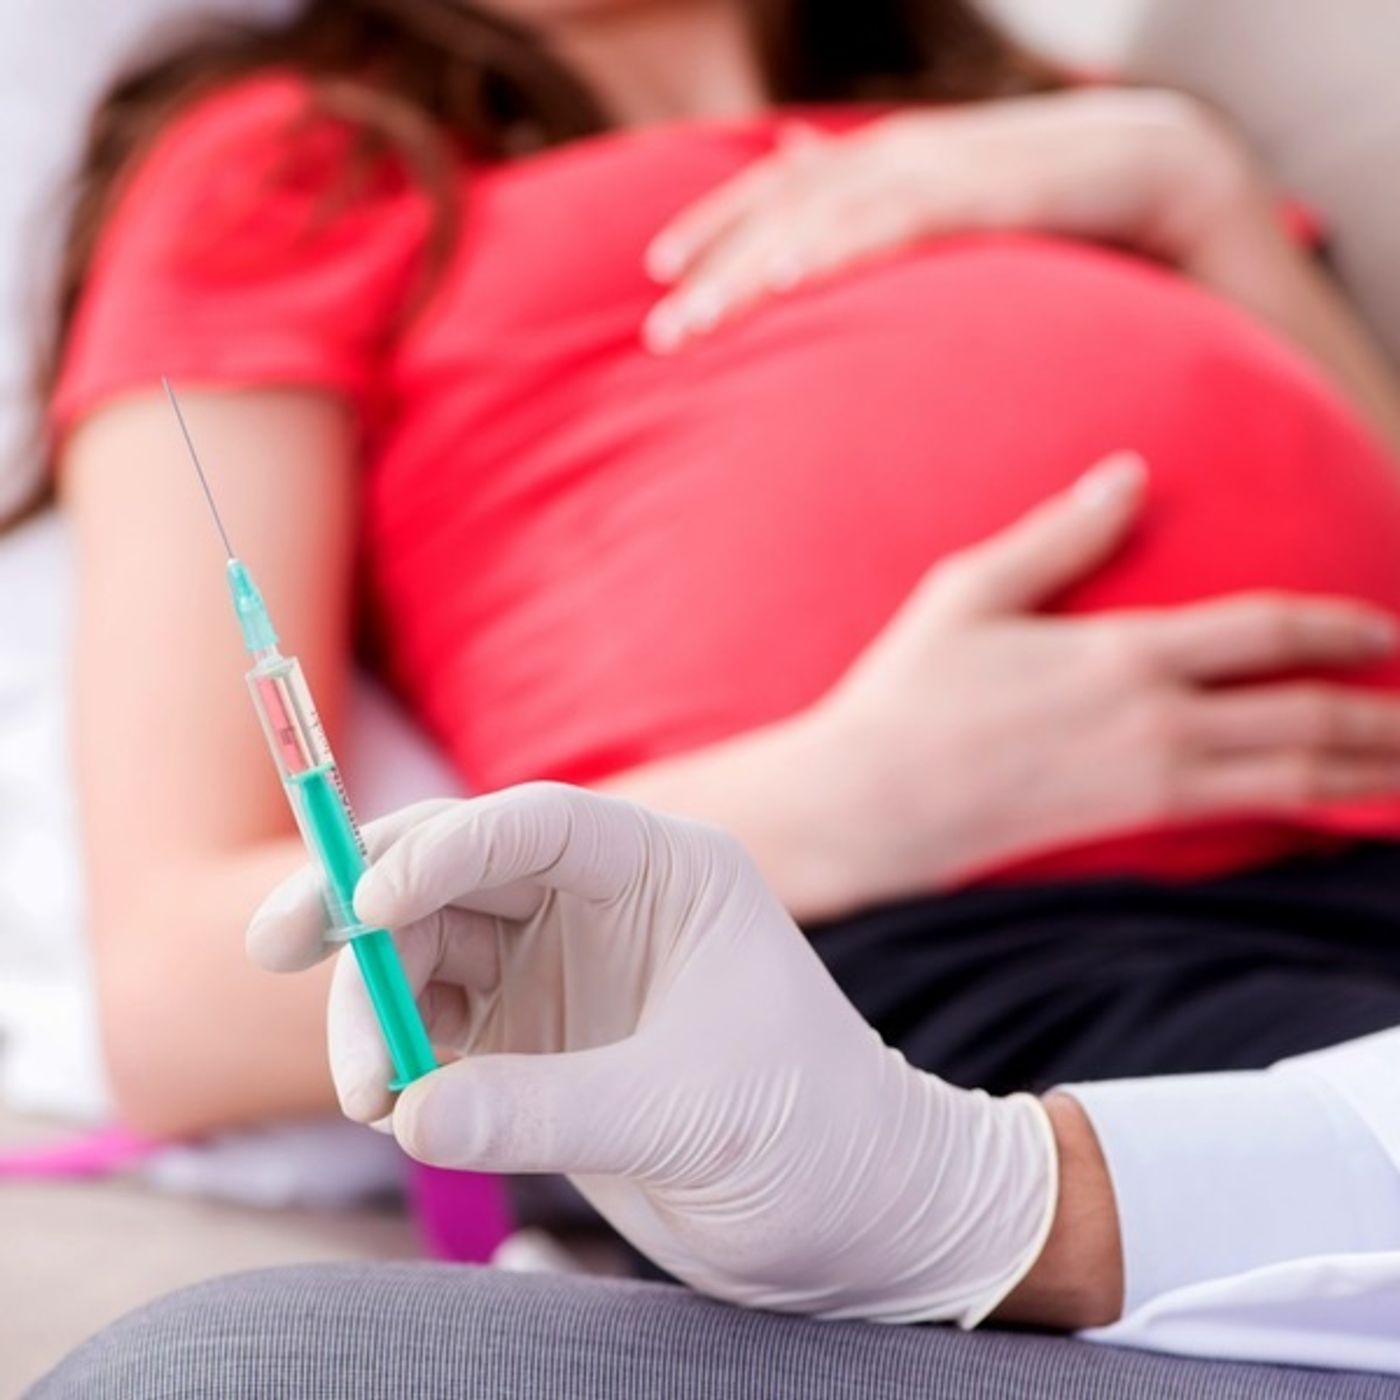 Il vaccino alle donne in gravidanza ha triplicato gli aborti "spontanei"